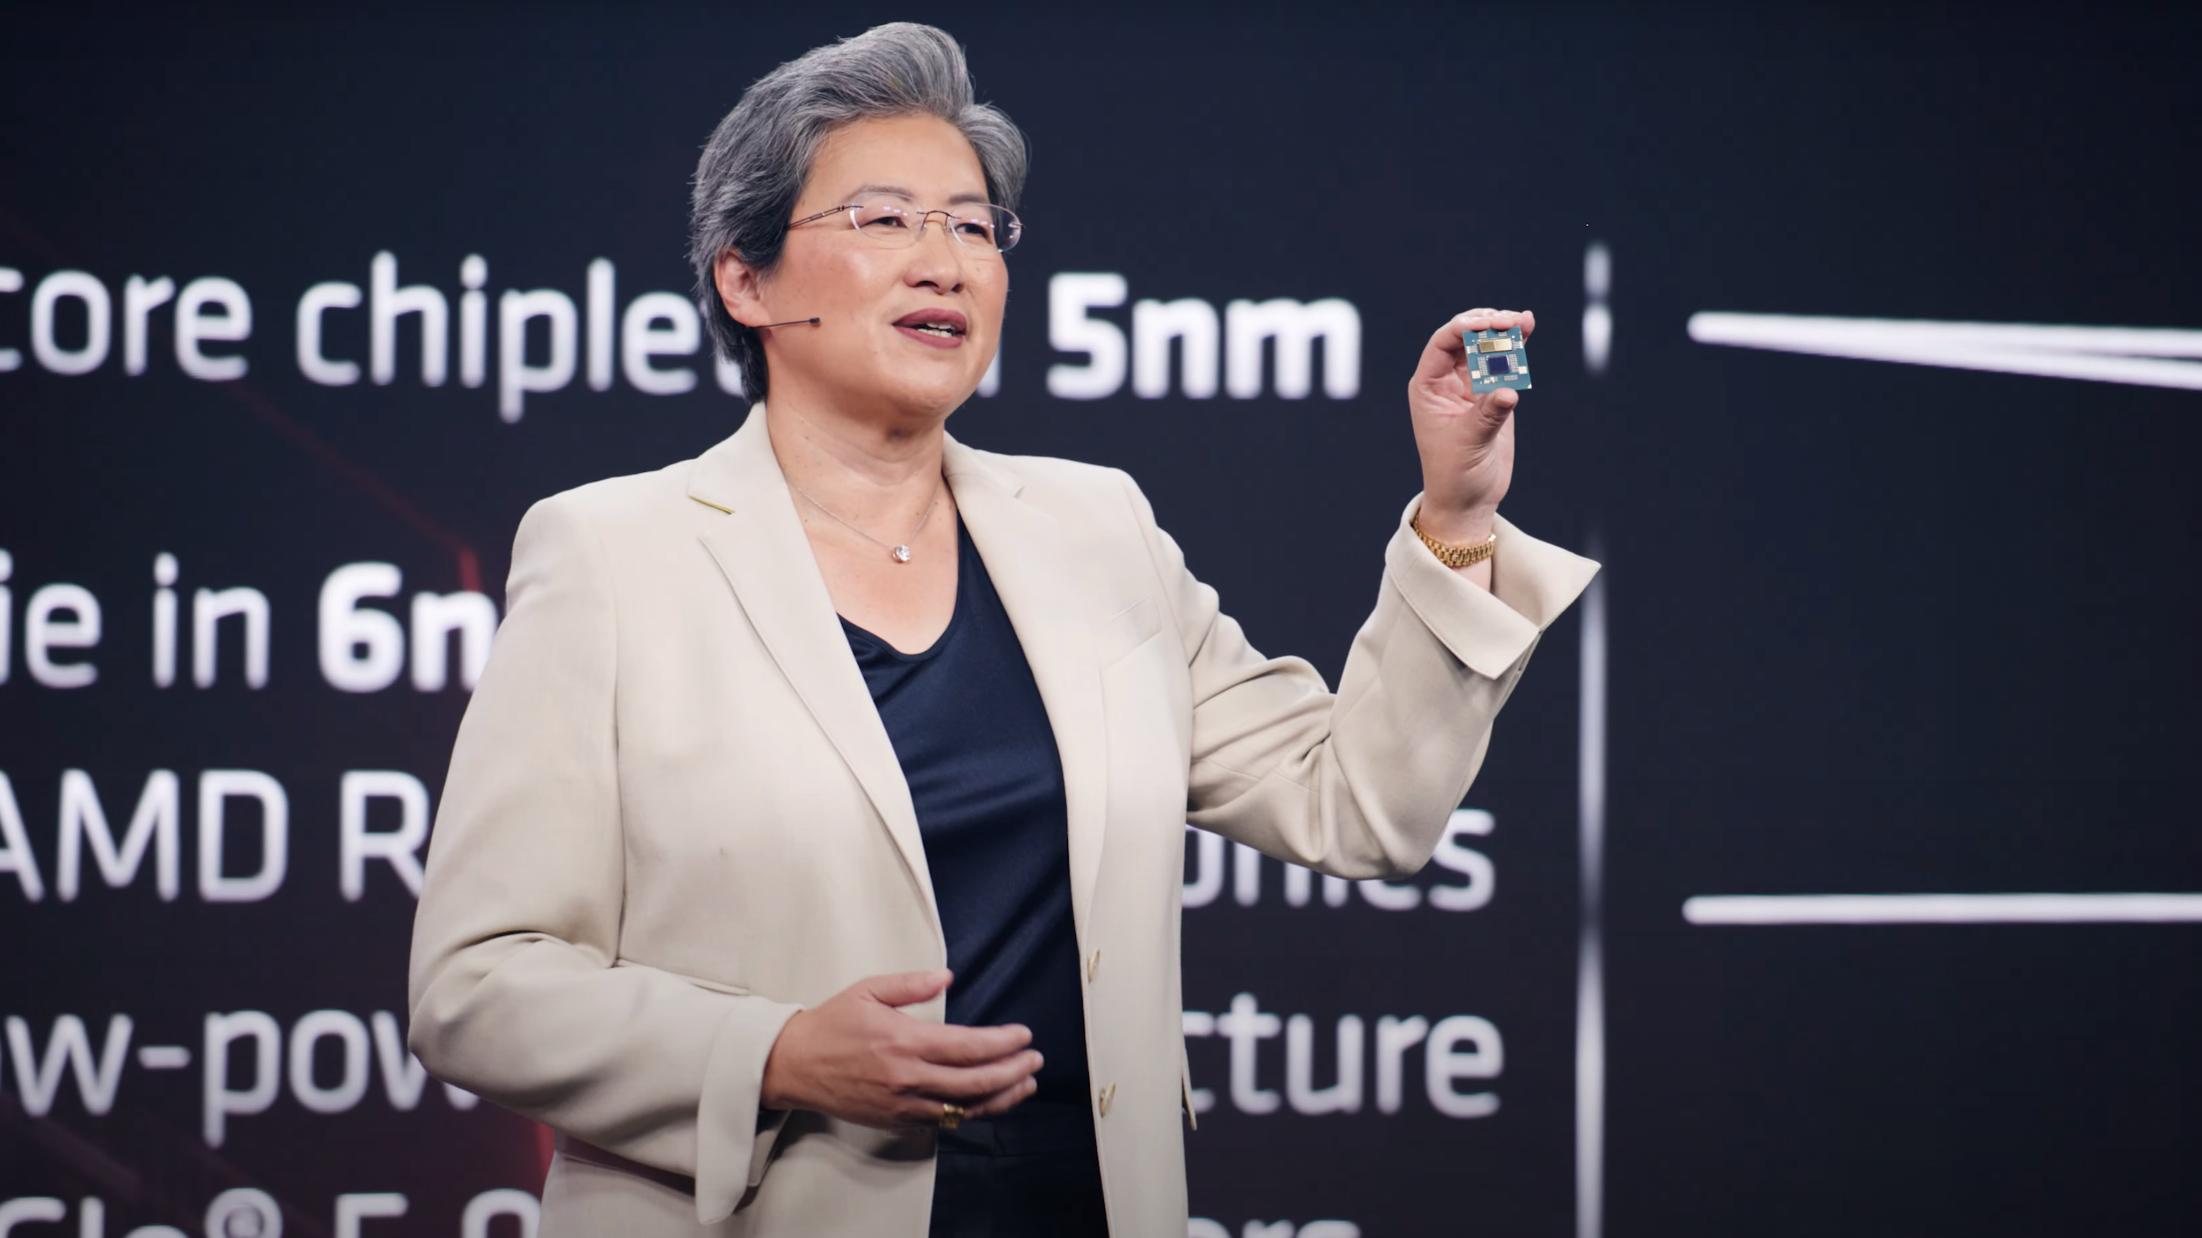 AMD-sjef Lisa Su viser frem en av de nye Ryzen 7000-prosessorene under Computex 2022.